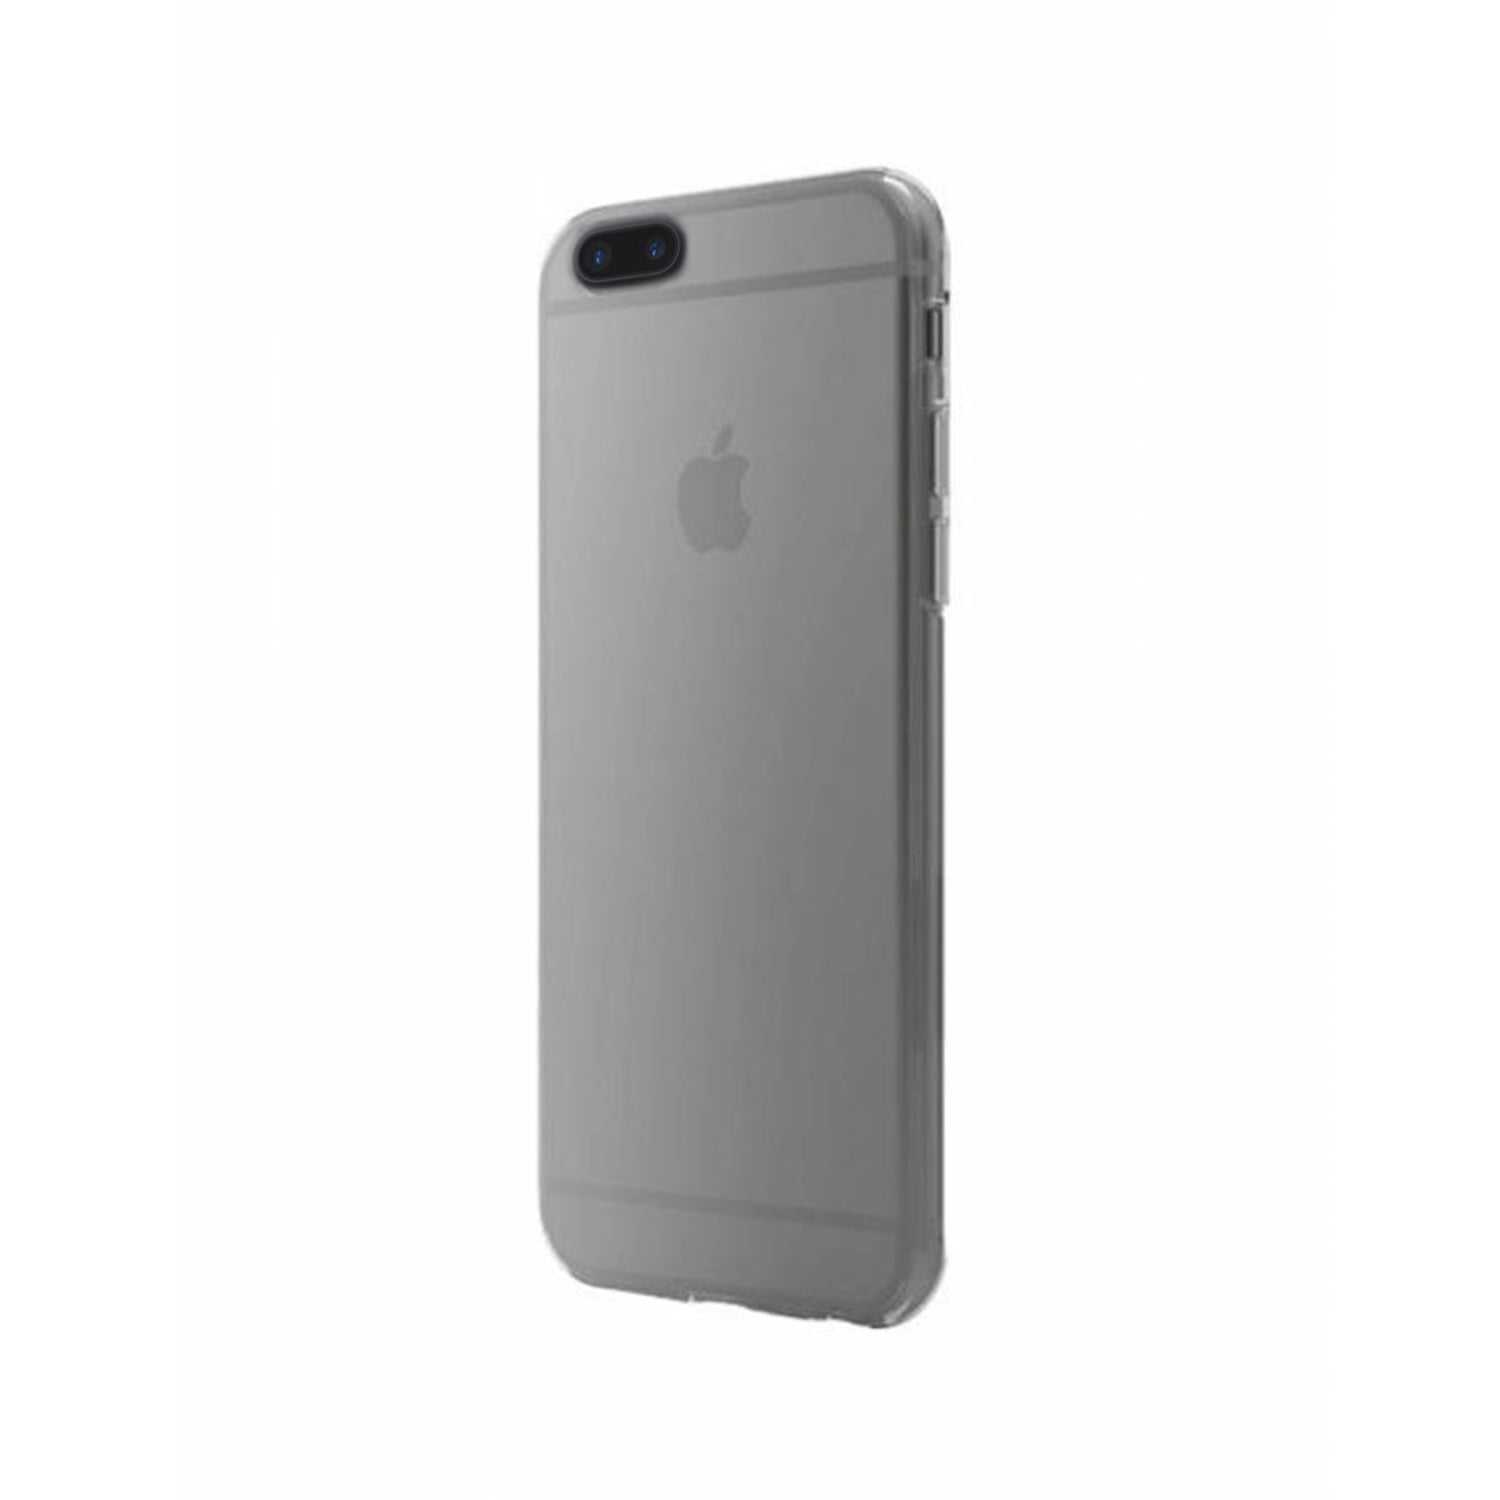 Cygnett AeroSlim iPhone 6 Plus / 6S Plus / 7 Plus Case Grey